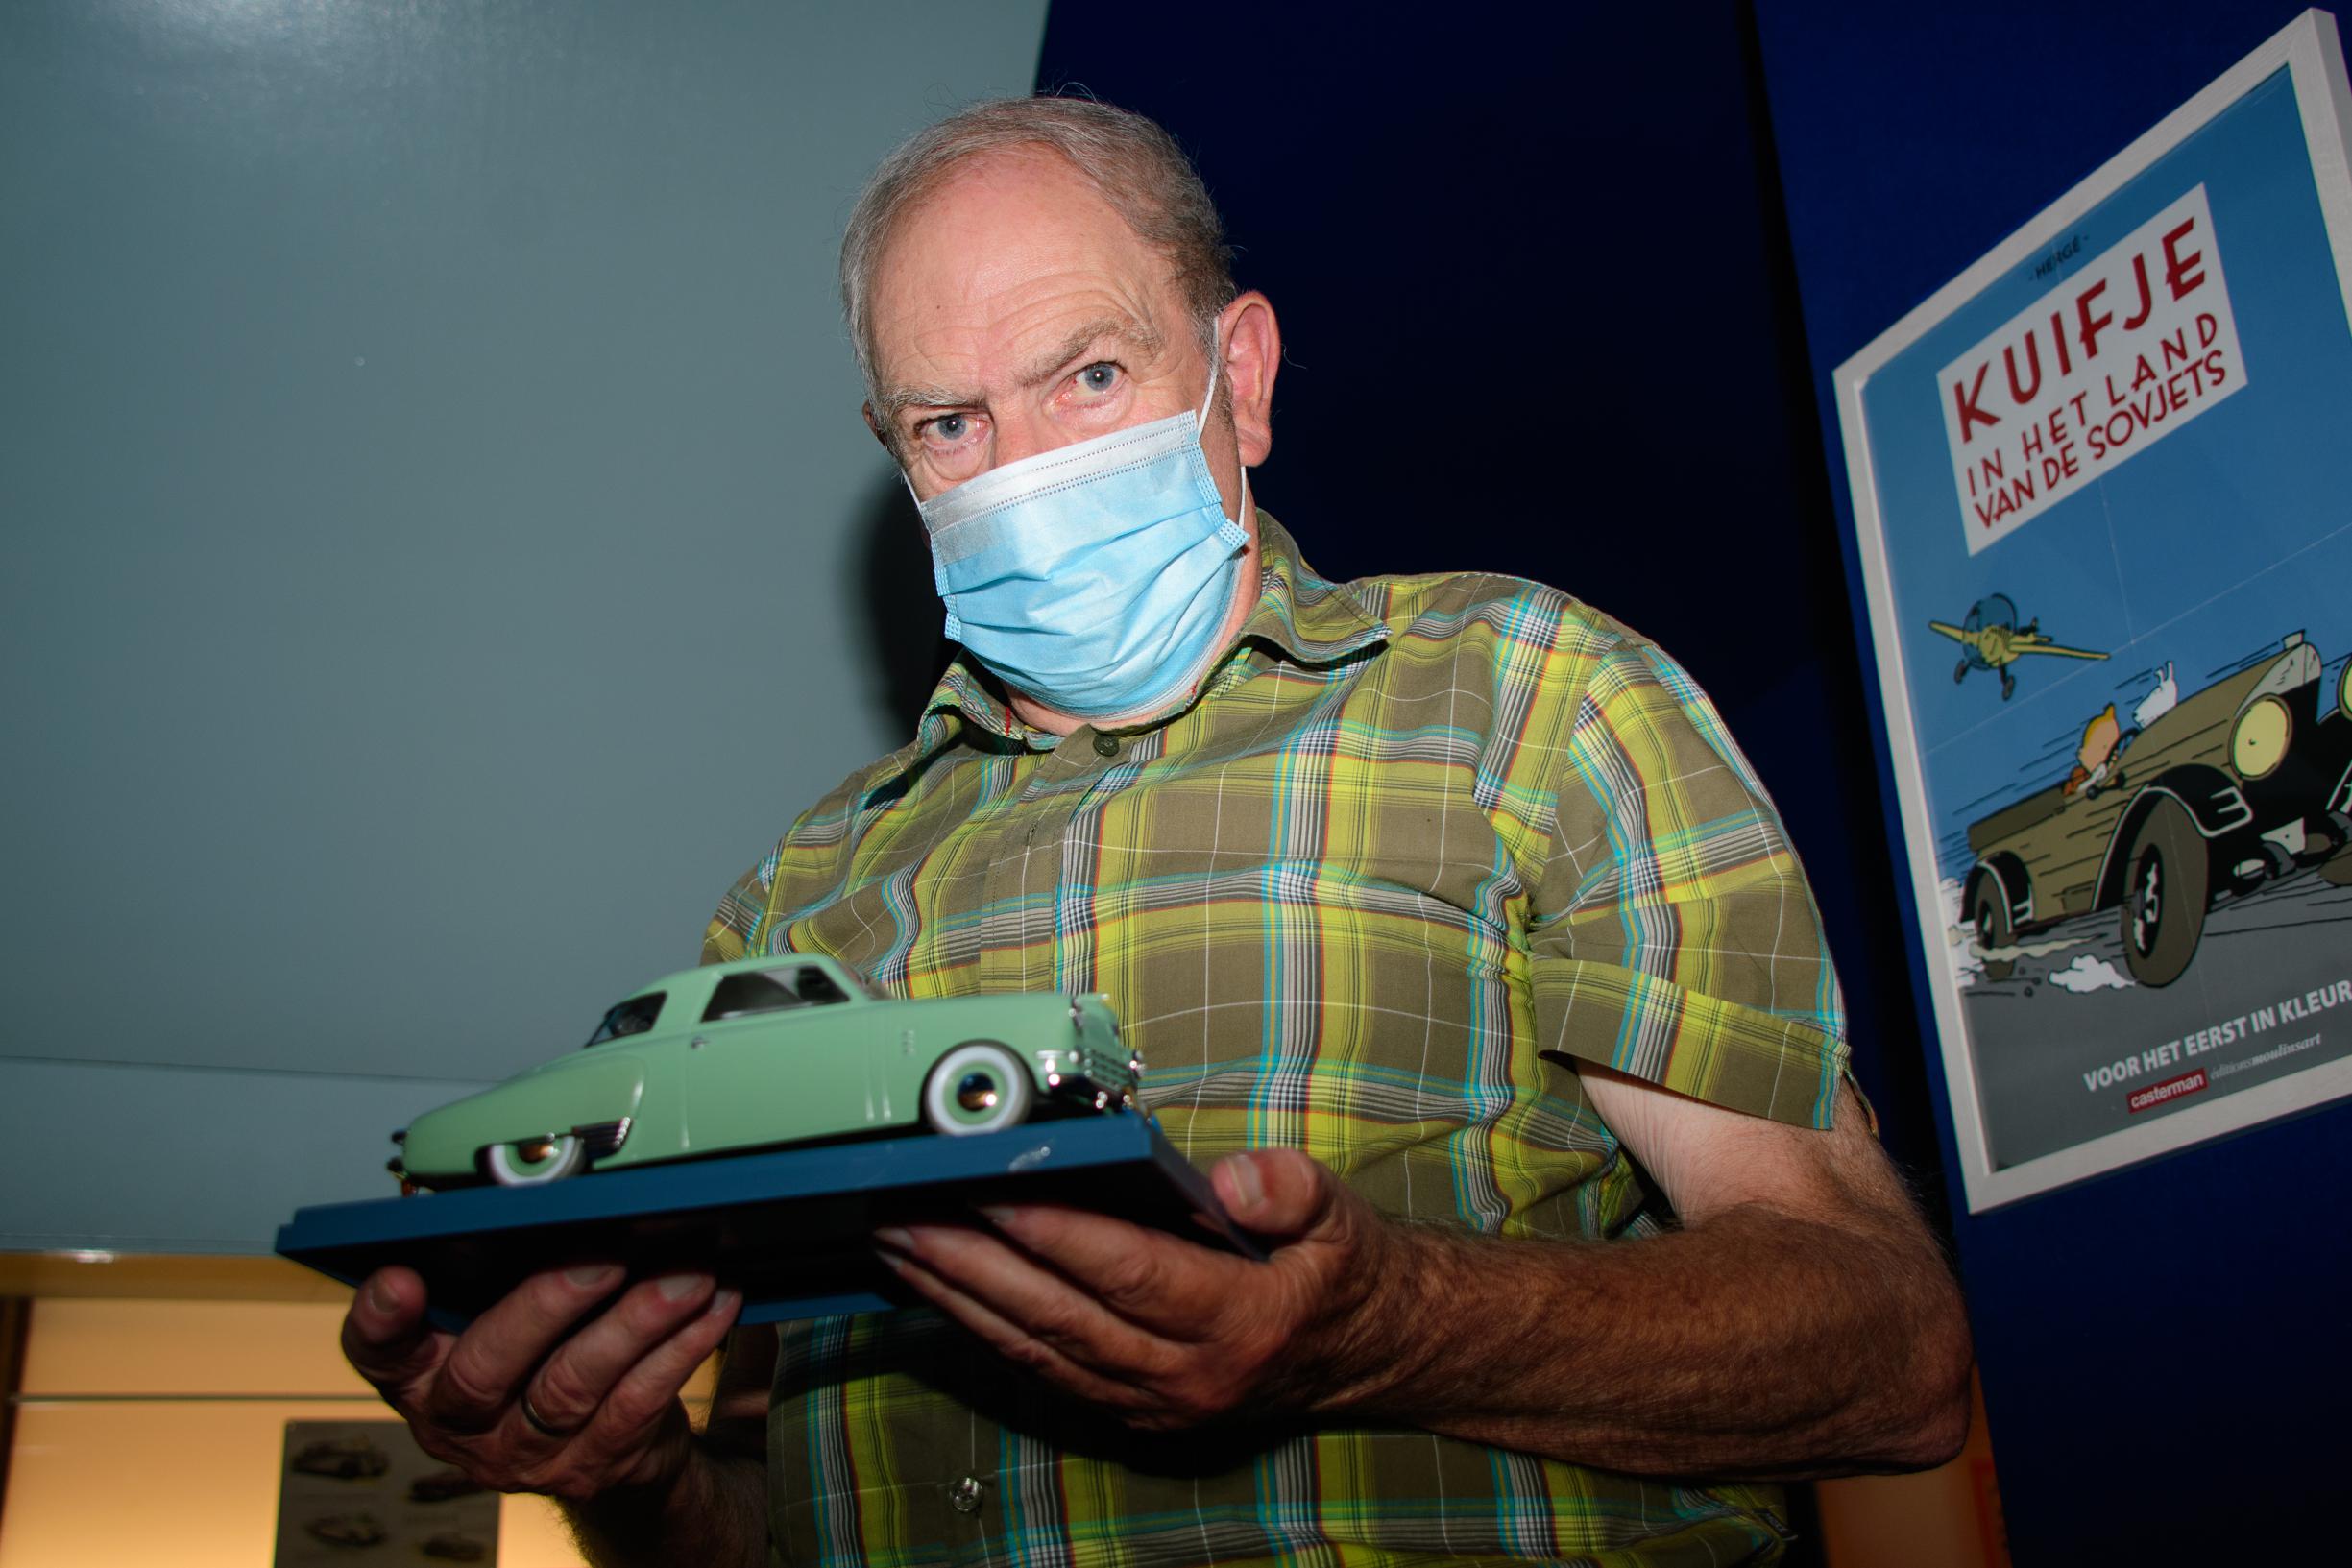 Eddie (73) miniatuurauto's in museum: “Ik ben tel kwijt” | Het Nieuwsblad Mobile